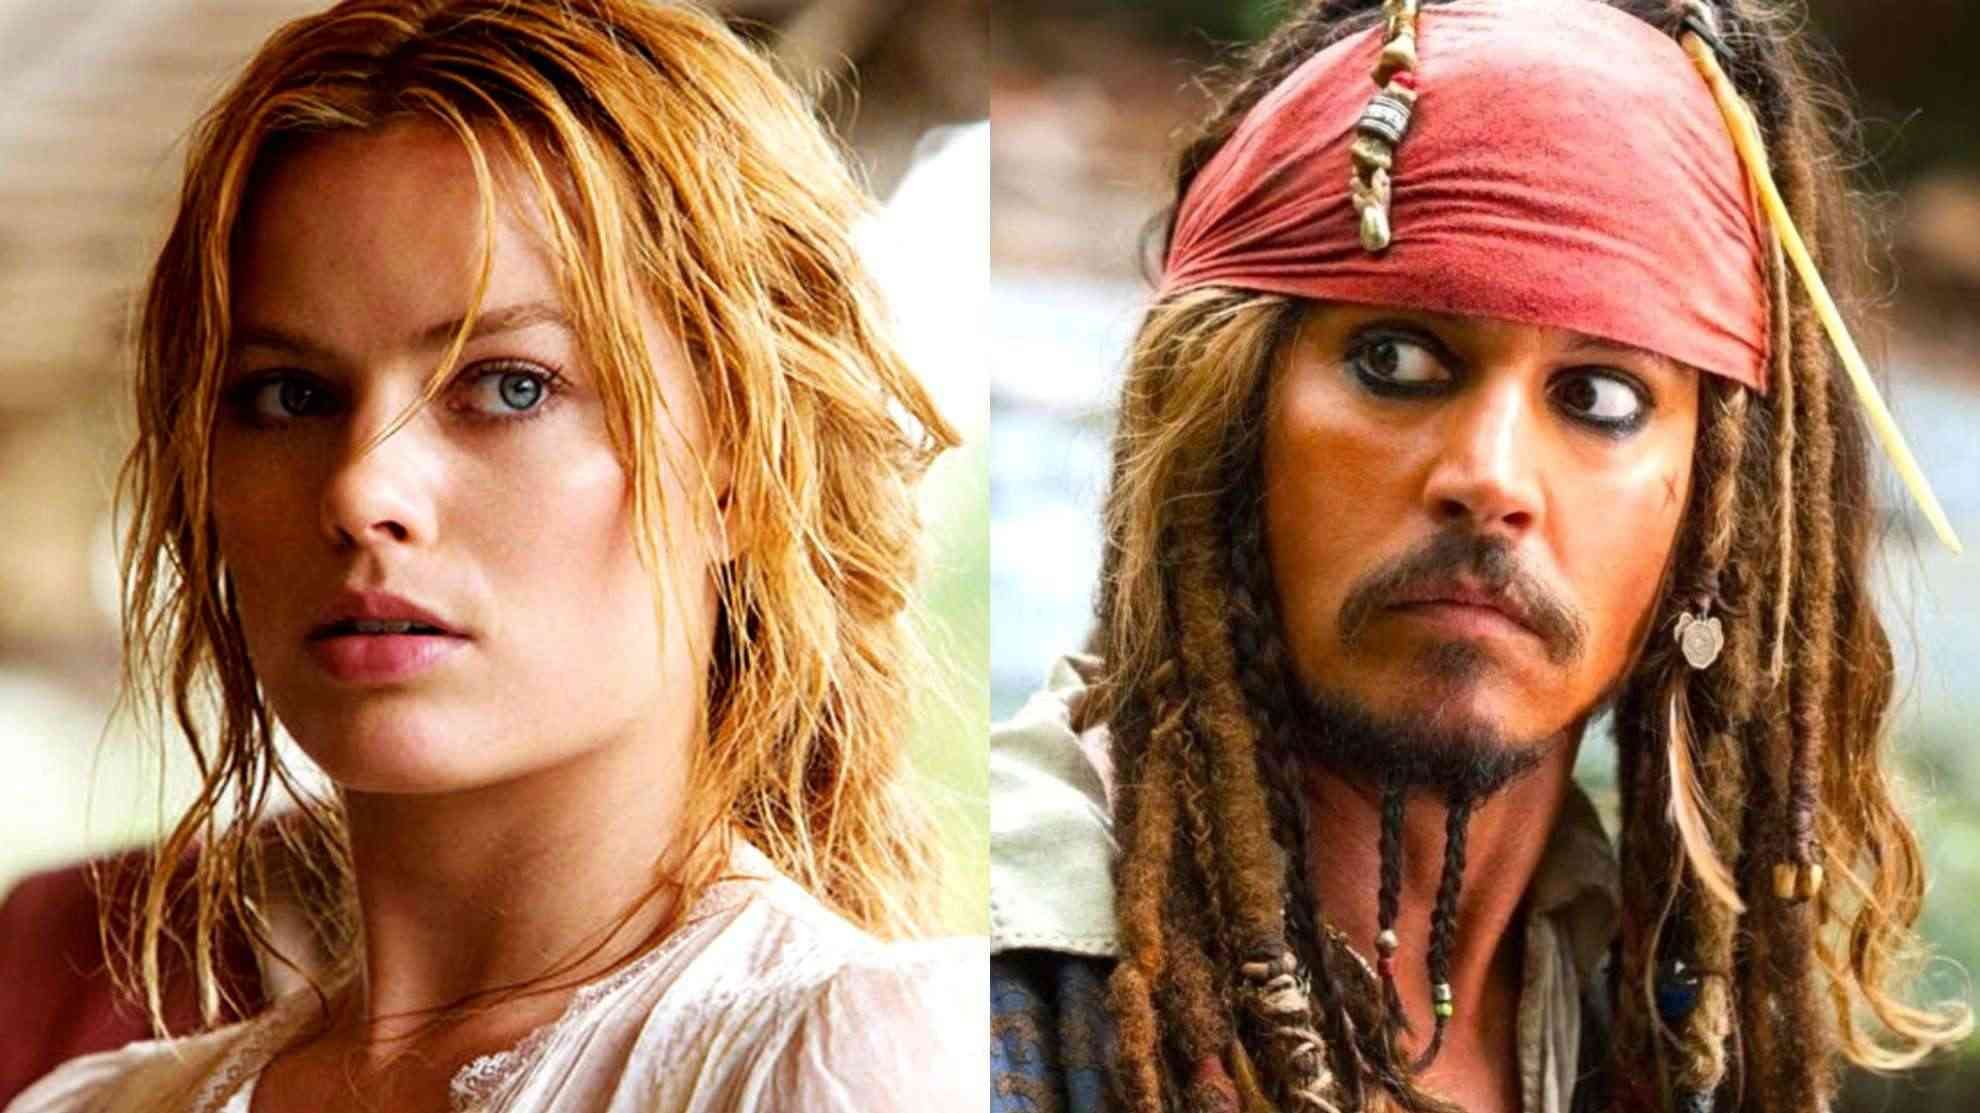 Dự án Pirates of the Caribbean do Margot Robbie đóng chính đã bị hủy bỏ